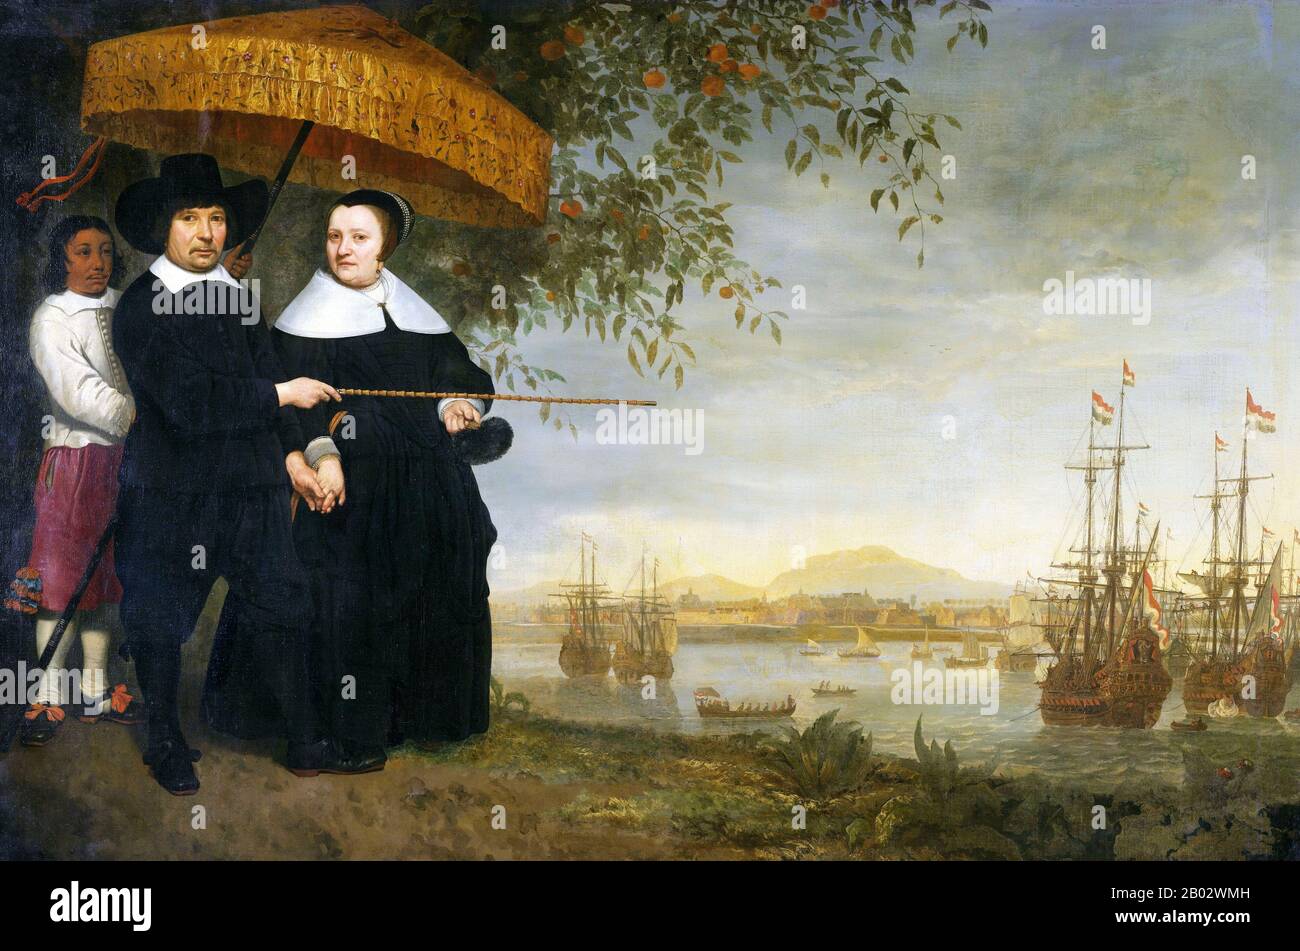 Pays-Bas / Indonésie: Un commerçant principal de la Dutch East India Company, vraisemblablement Jacob Mathieusen, et son épouse à Batavia (Jakarta).Peinture à l'huile sur toile par Aelbert Cuyp (1620-1691), c.1640-1660.Tandis que Mathieusen et sa femme s'habillent dans le style protestant hollandais demure de l'époque, leur esclave survêtu tient un parasol, ou 'pajong', au-dessus d'eux.Avec sa canne, le marchand indique une flotte de navires appartenant à la Dutch East India Company (VOC).En arrière-plan se trouve la ville partiellement fortifiée de Batavia, le centre des opérations du COV en Asie. Banque D'Images